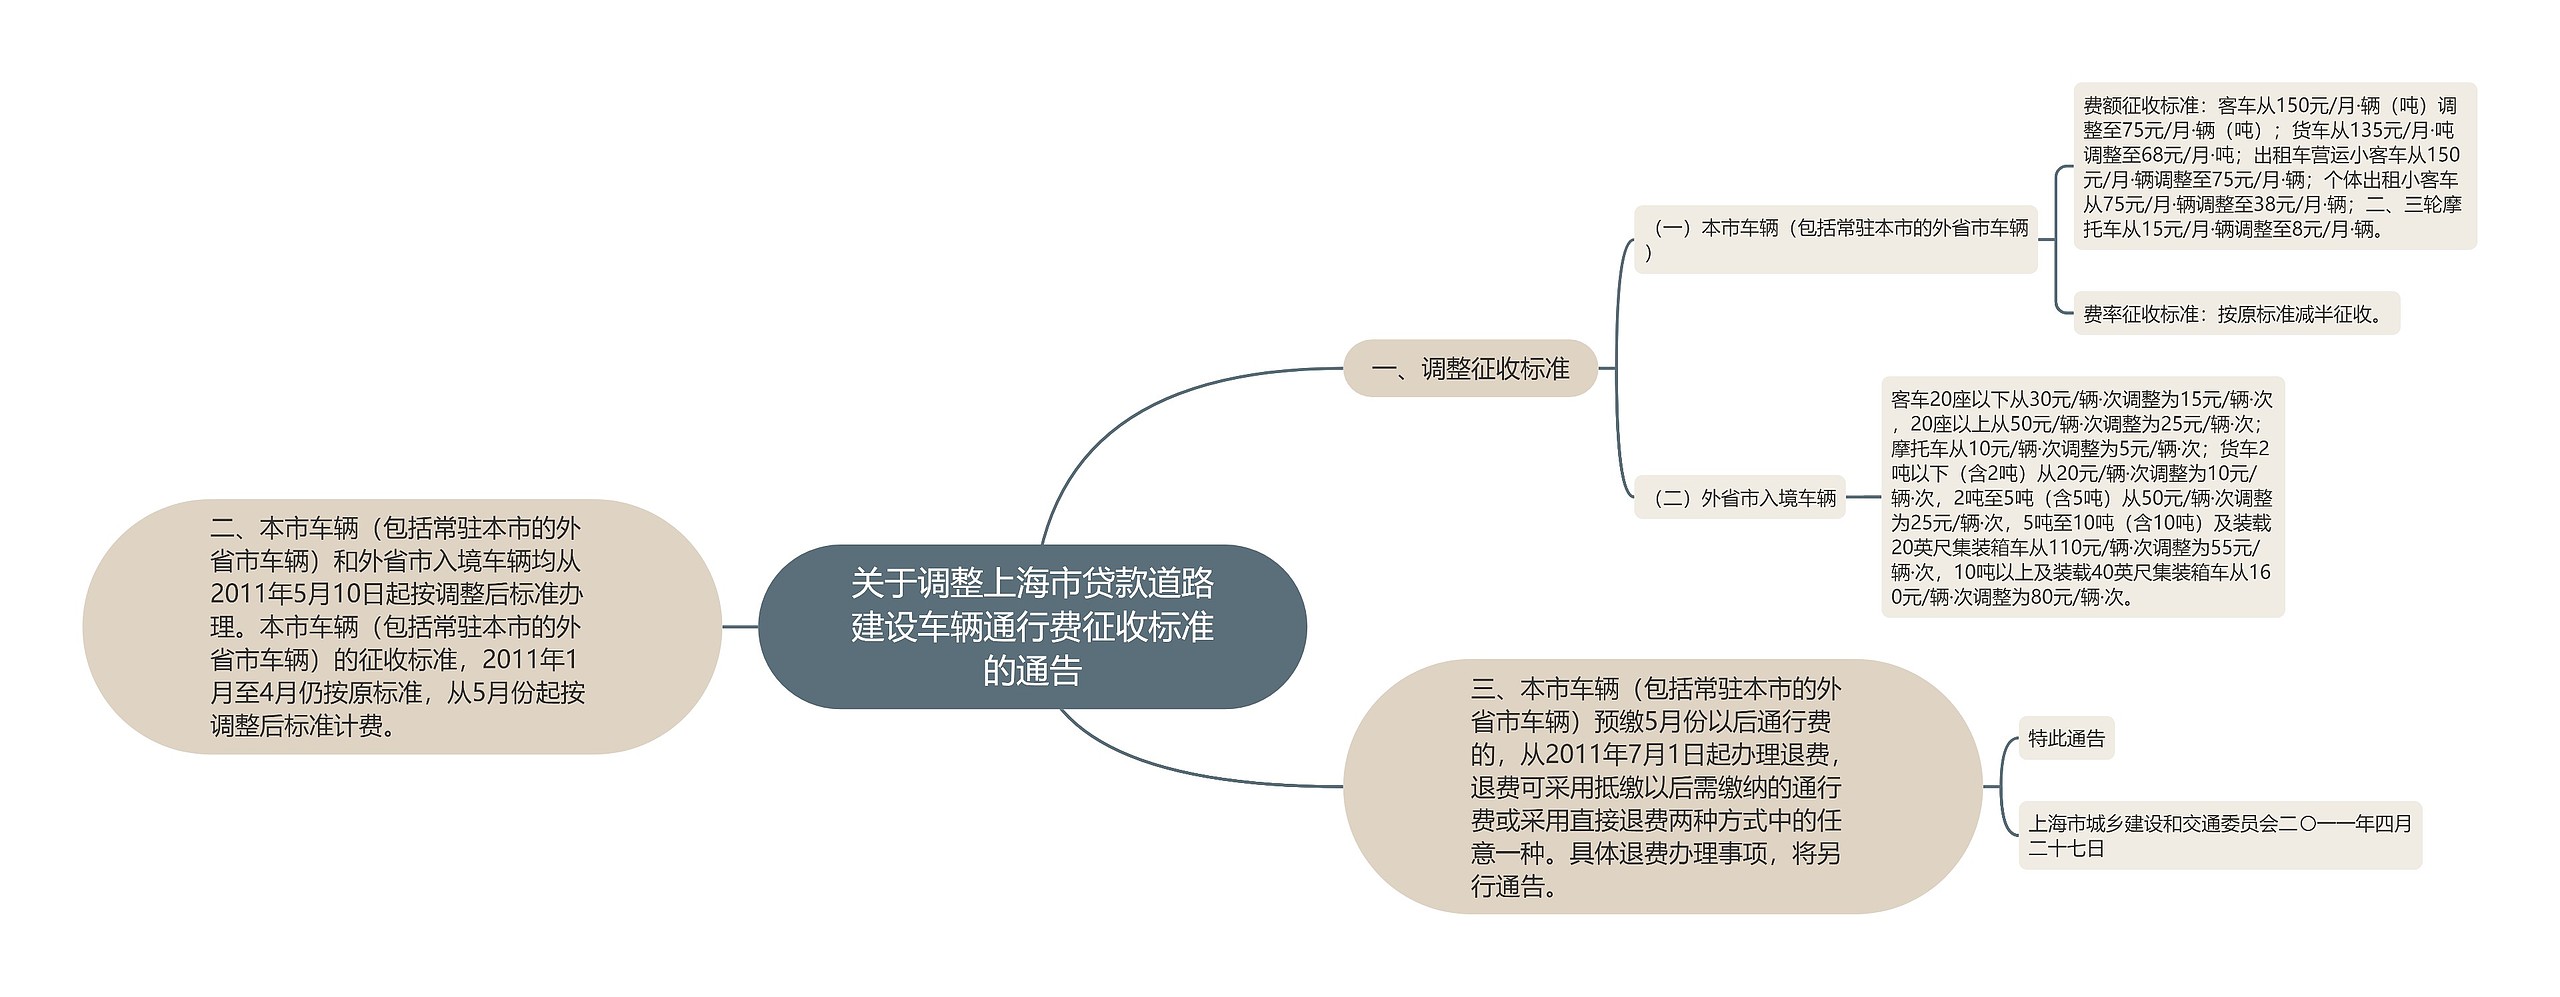 关于调整上海市贷款道路建设车辆通行费征收标准的通告思维导图